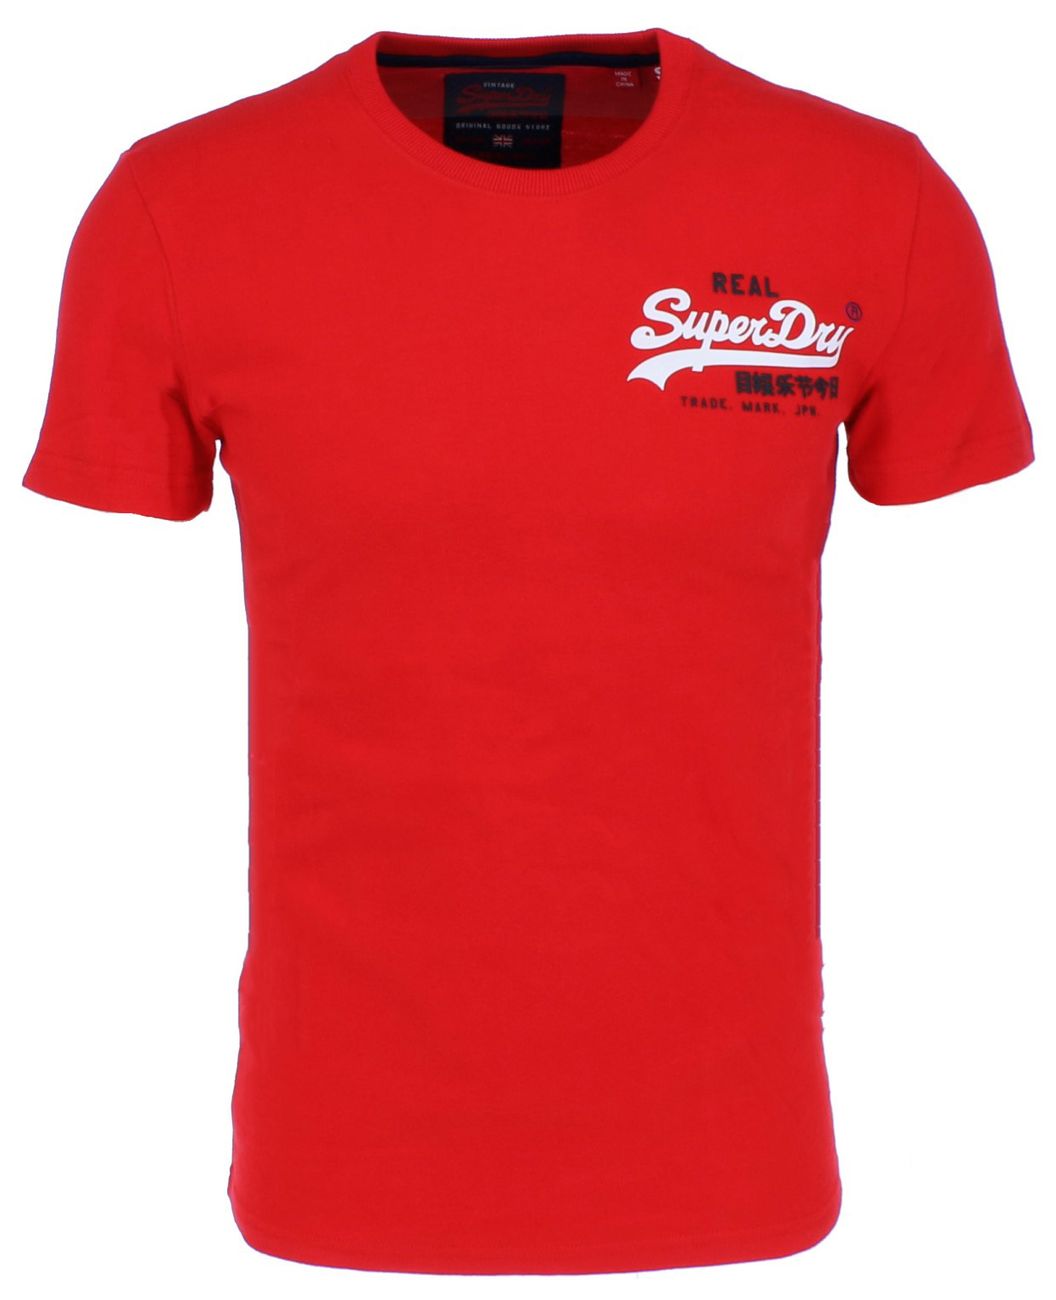 Superdry VINTAGE LOGO RACER TEE Herren T-Shirt